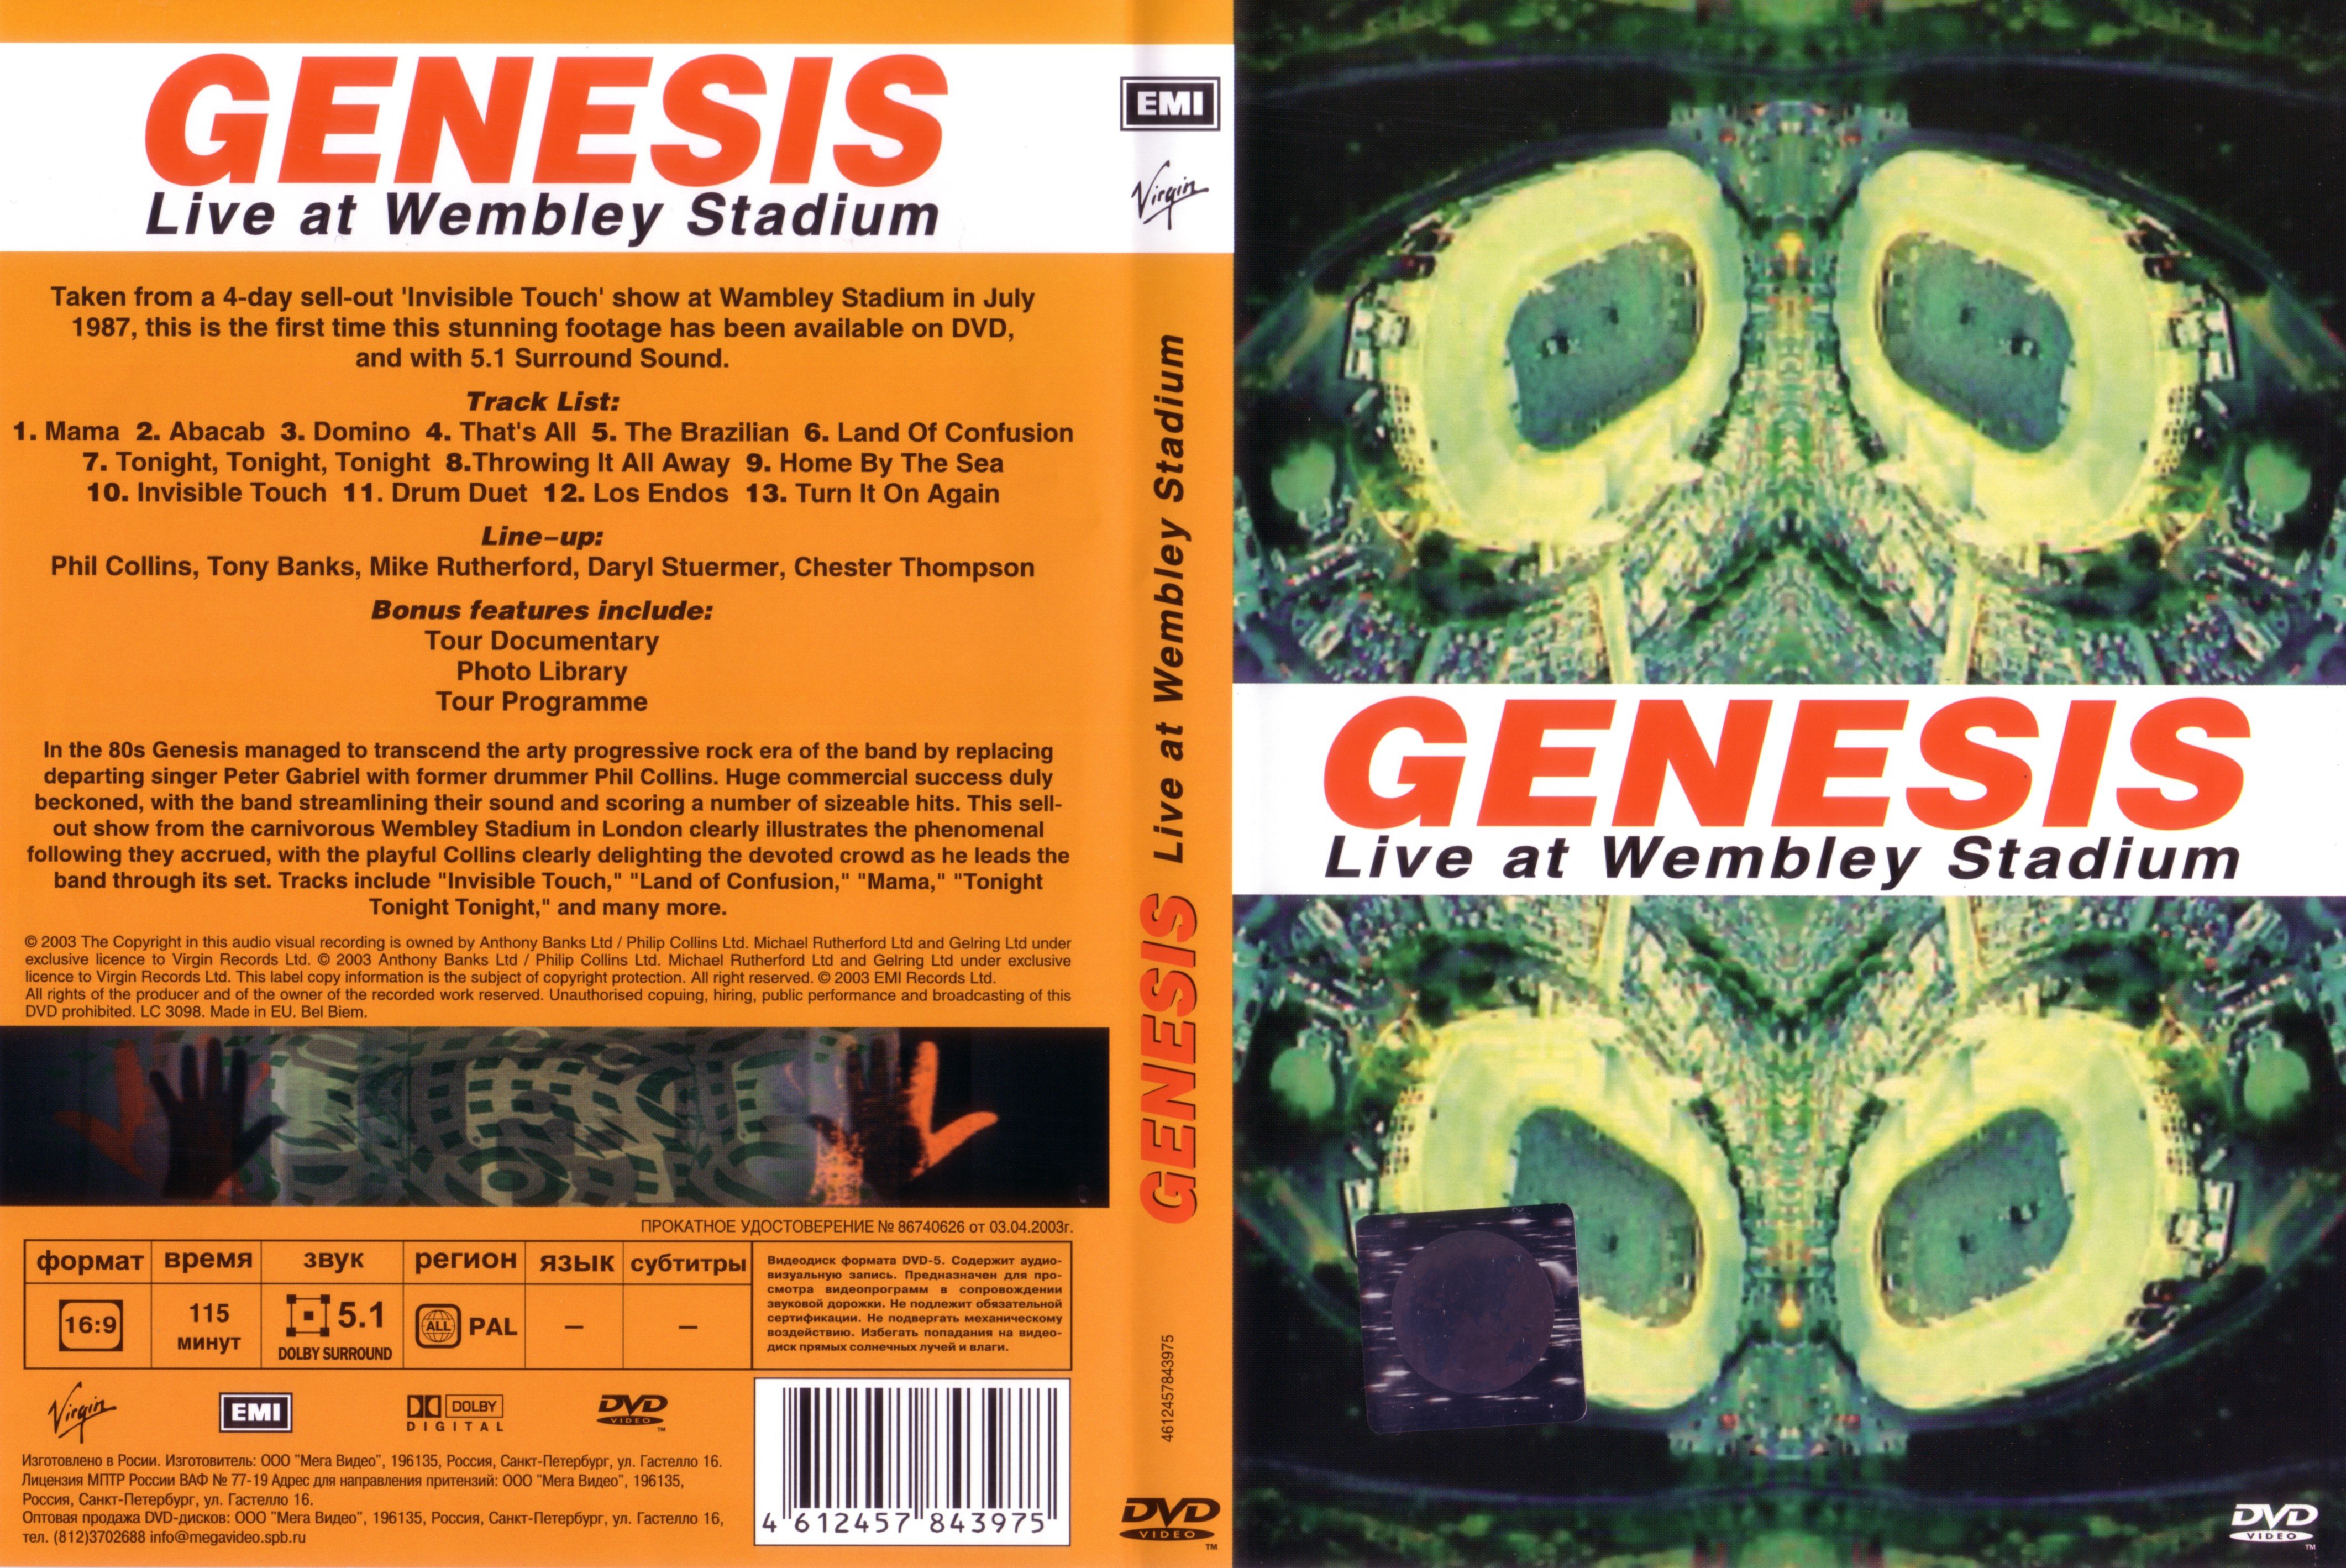 Jaquette DVD Genesis Live at Wembley v2